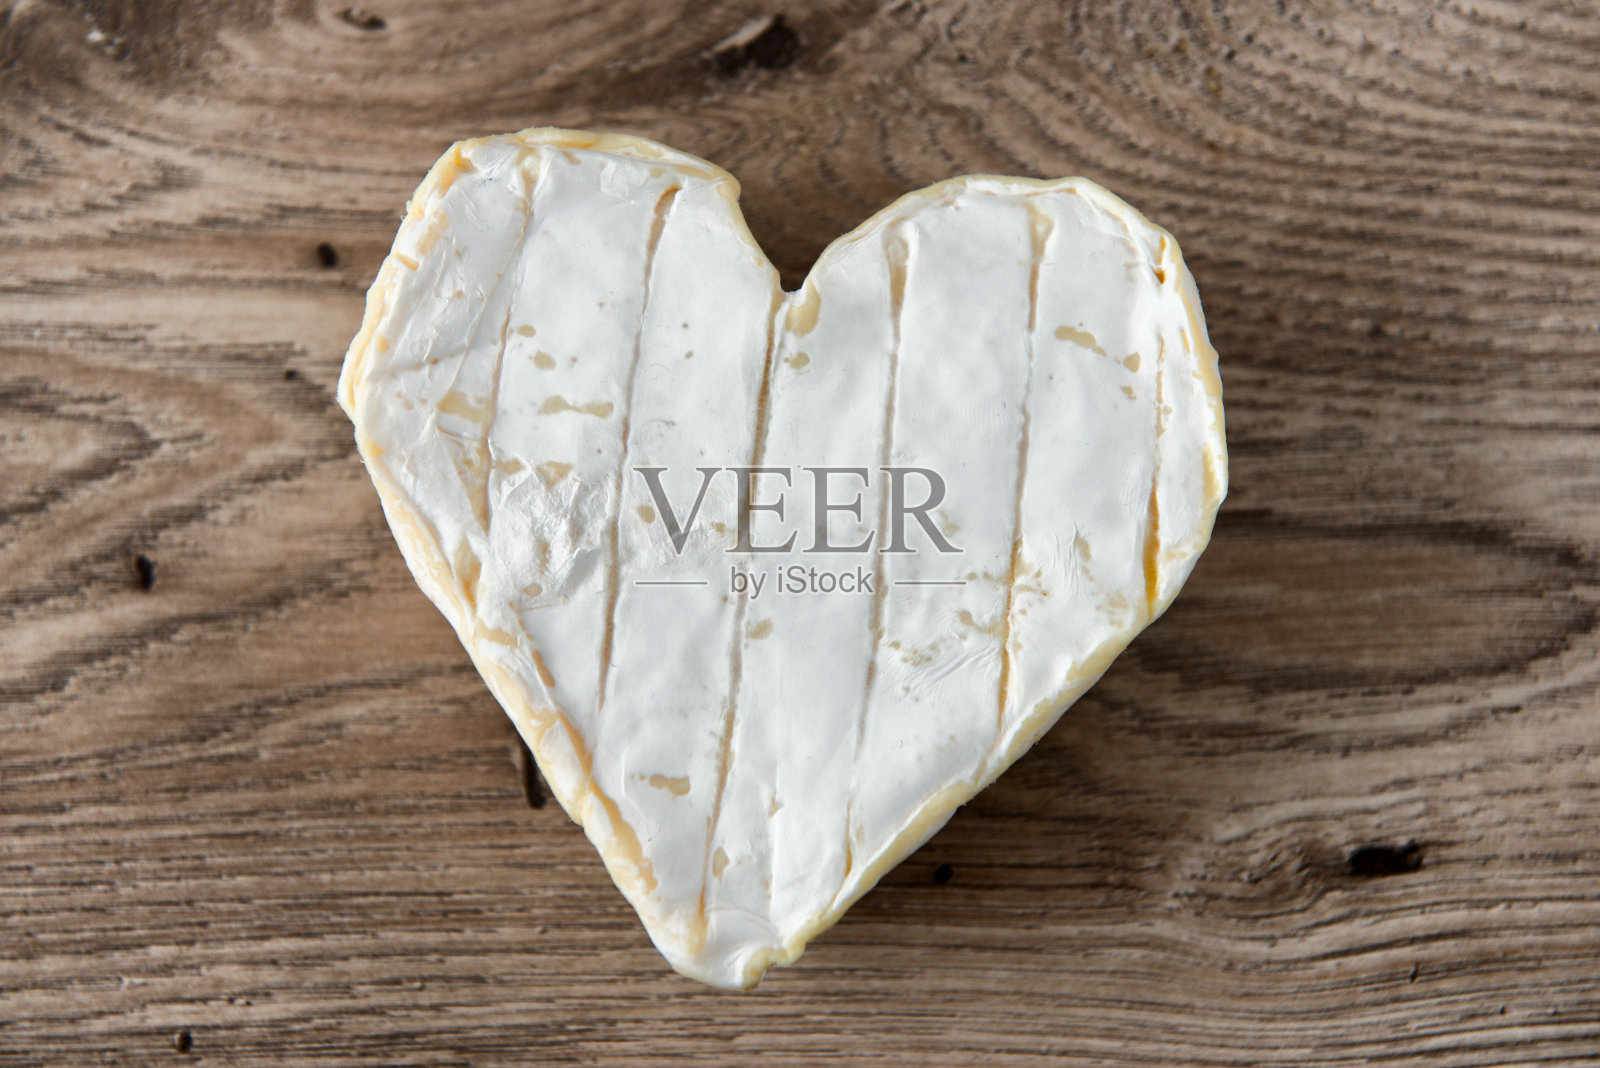 一个法国Neufchatel奶酪形状的心放在木桌上照片摄影图片